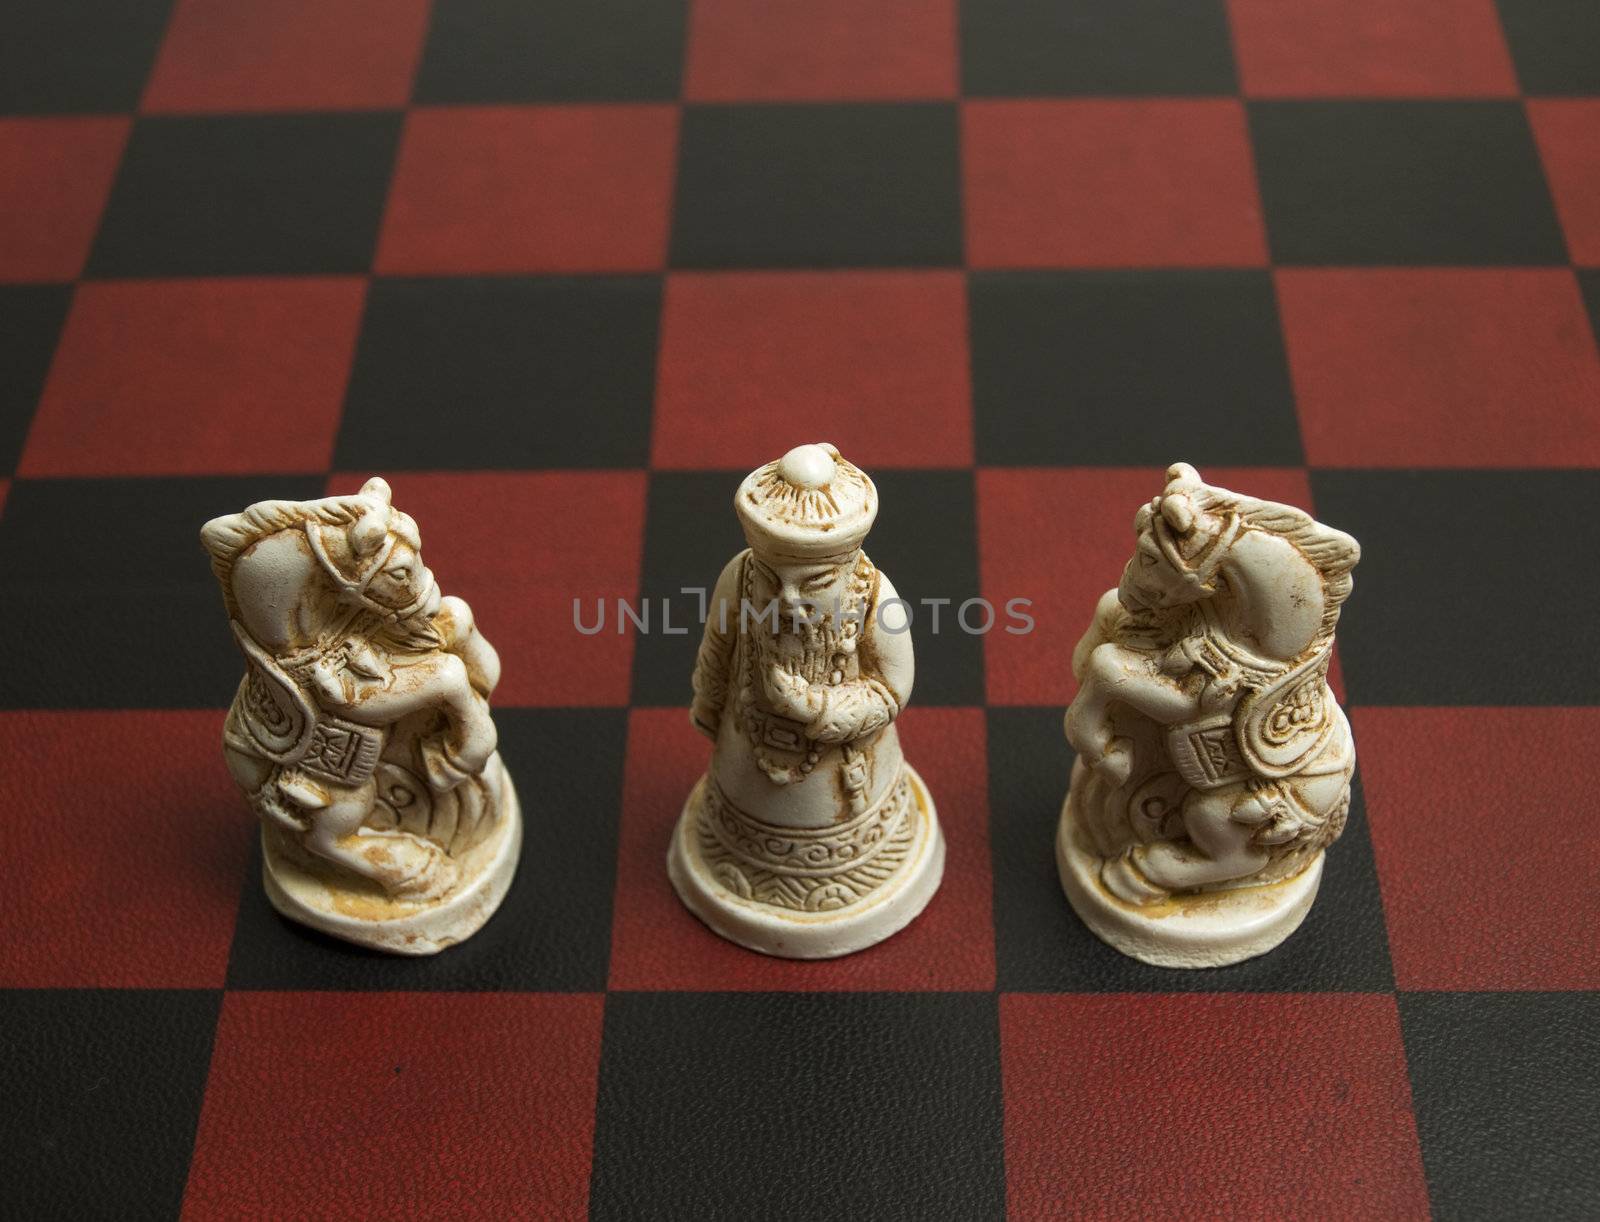 Chinese Chess by Bedolaga